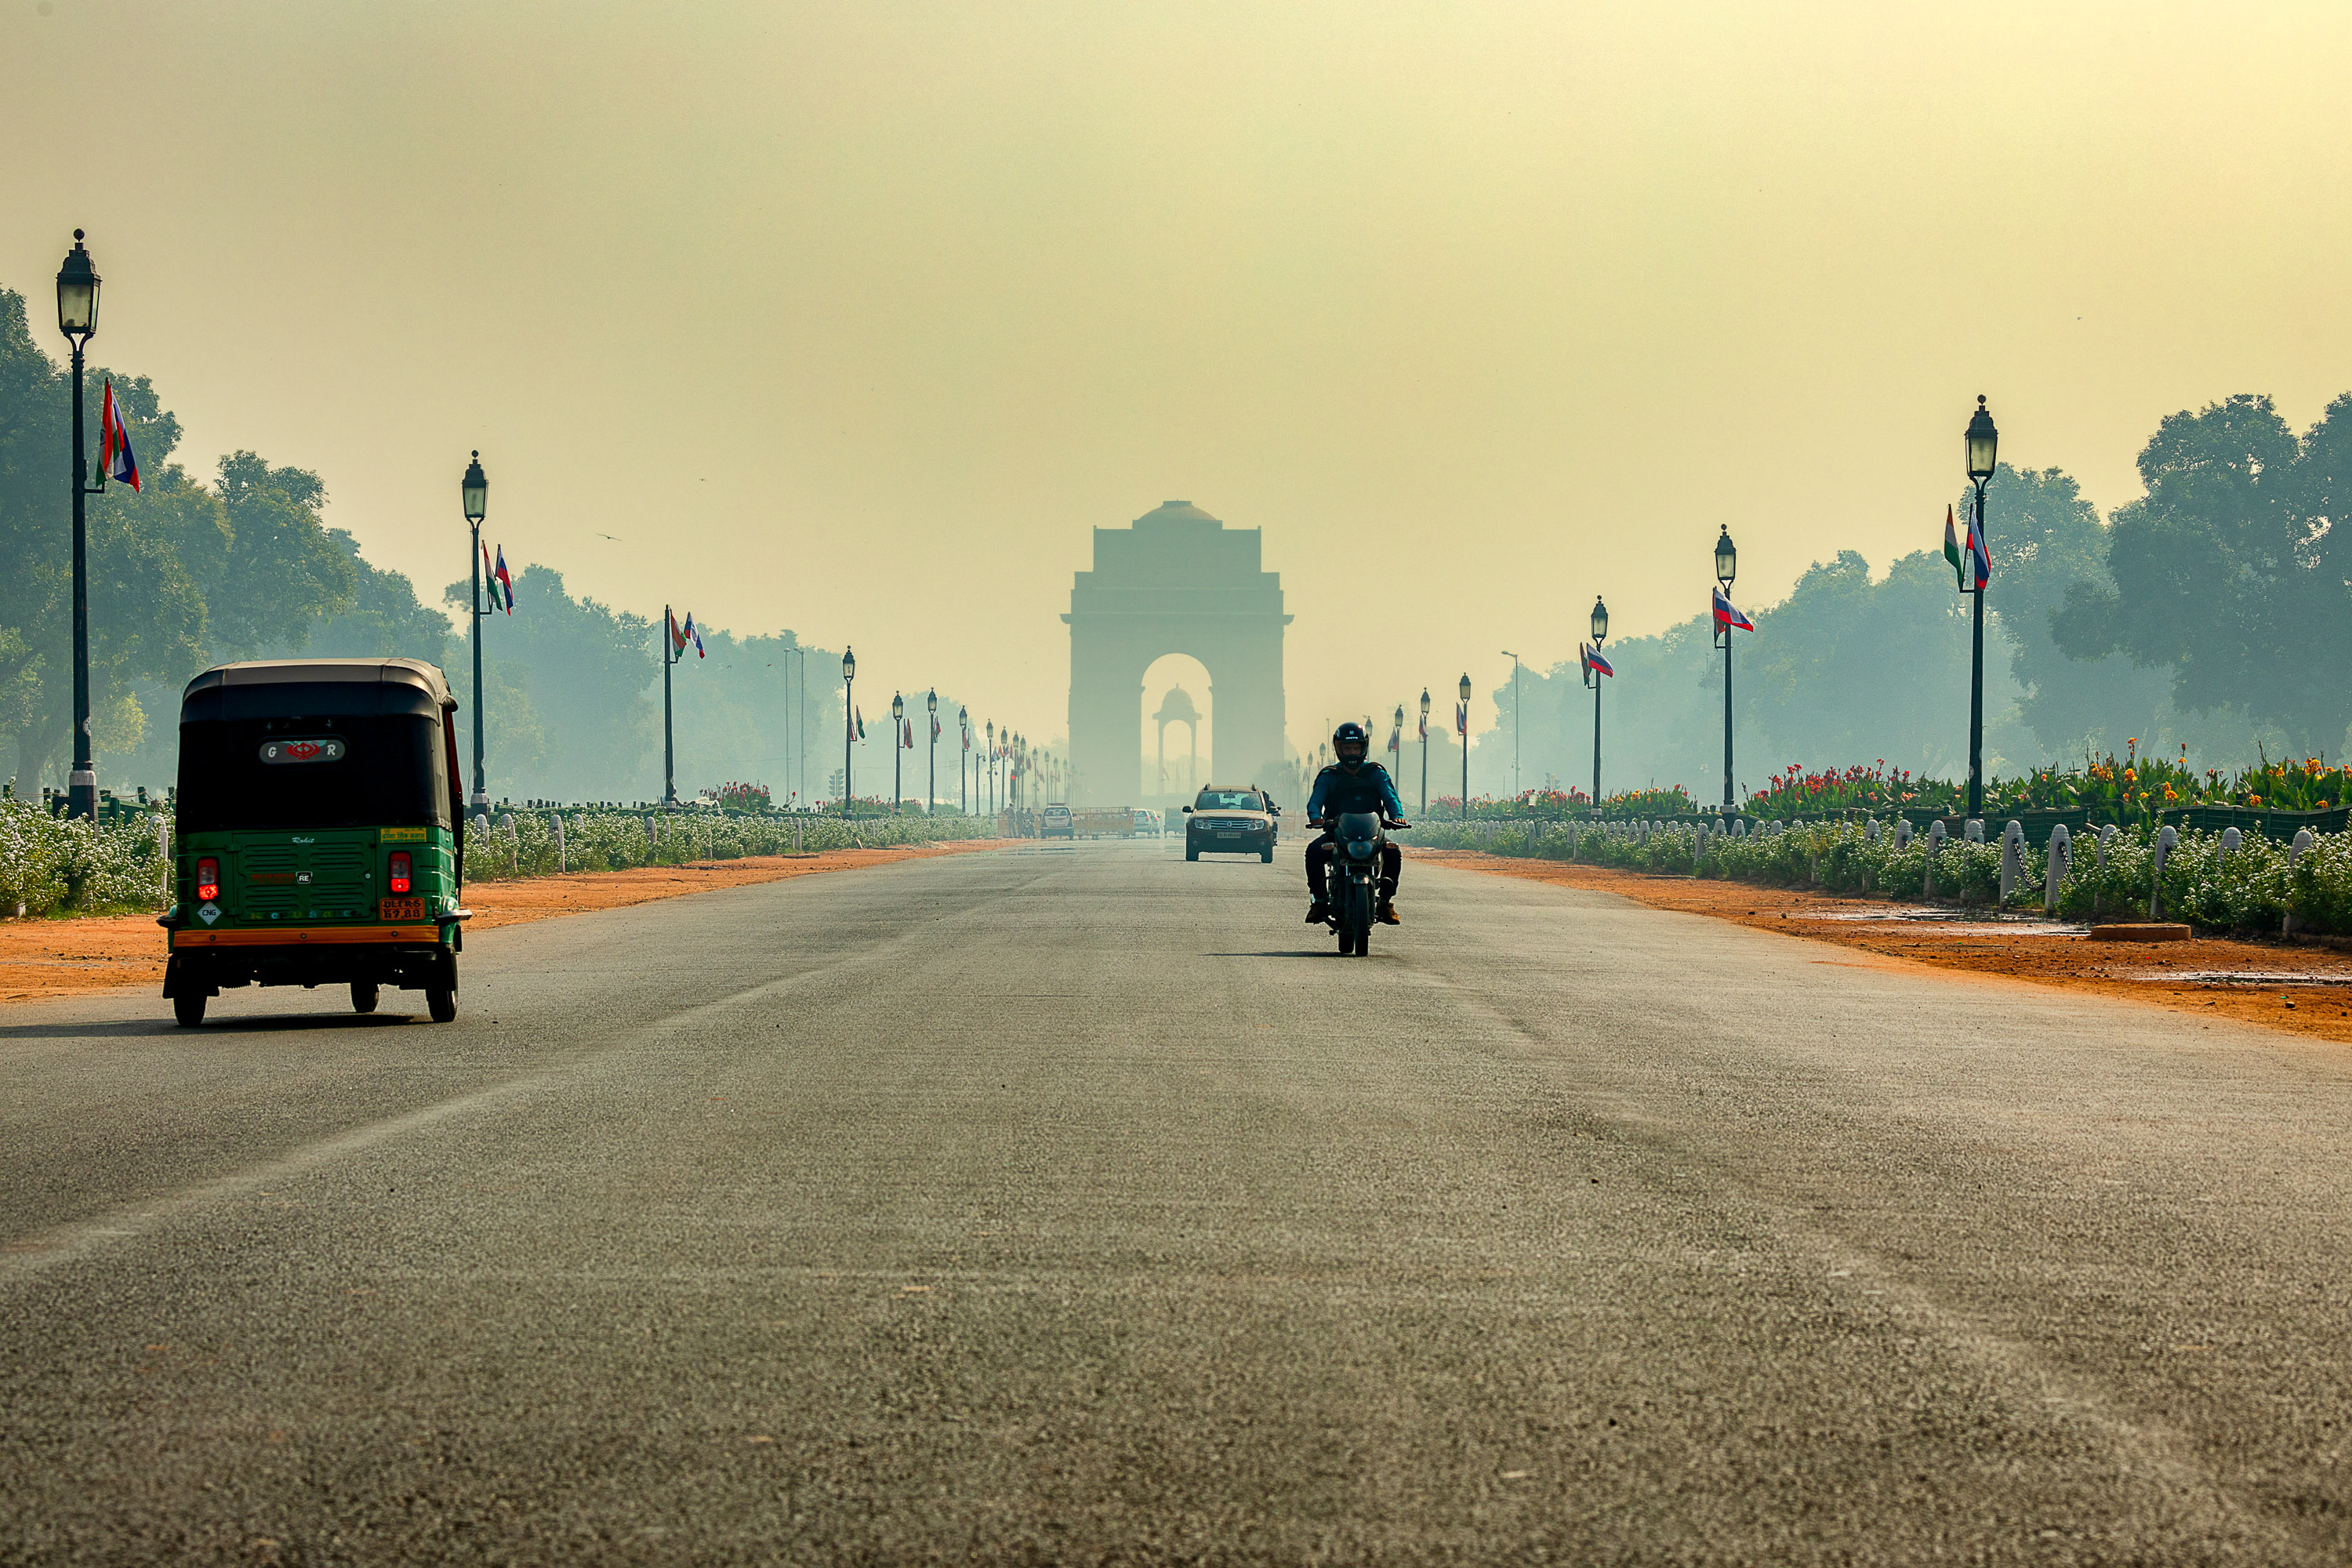 The gateway to India, New Delhi